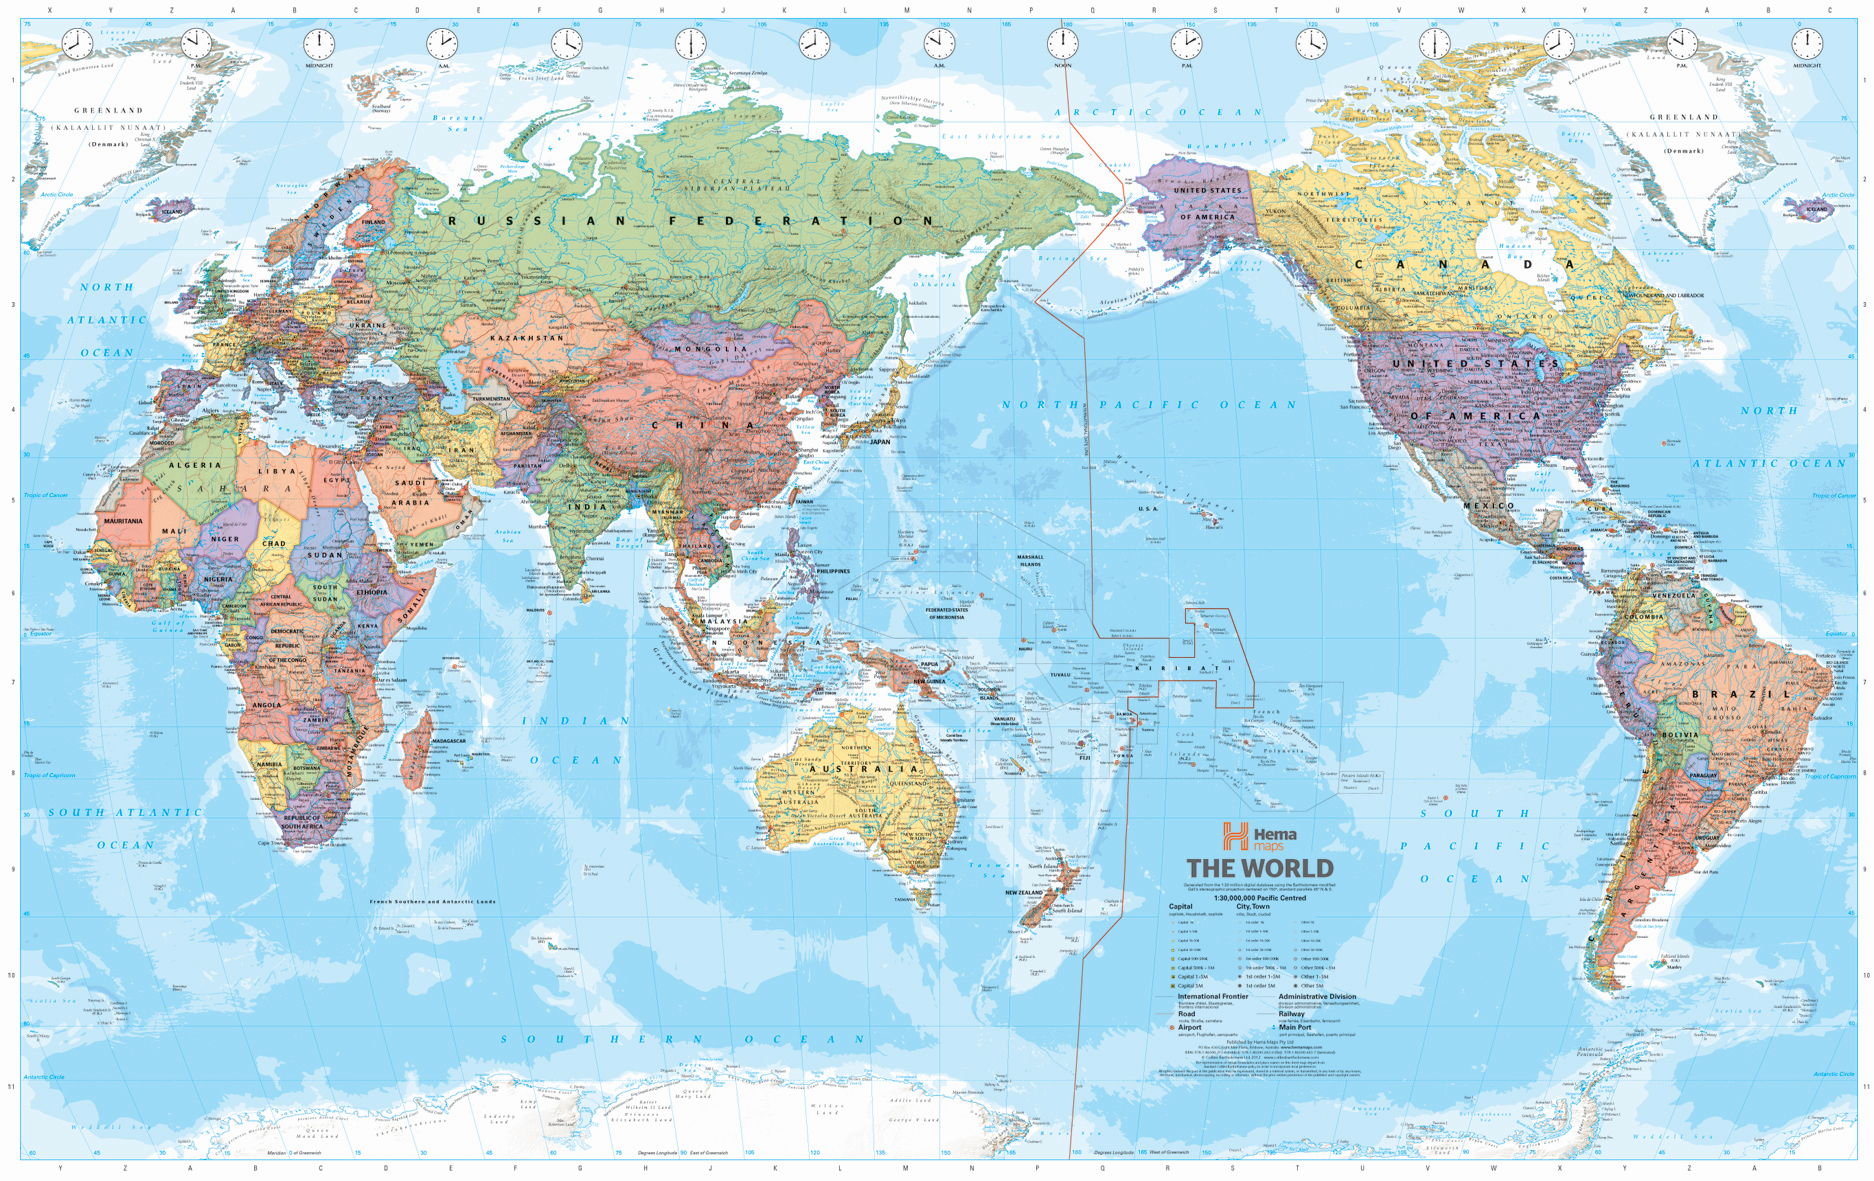 世界地图全图高清版_世界地图高清版大图_世界地图_地图_第一纸金网